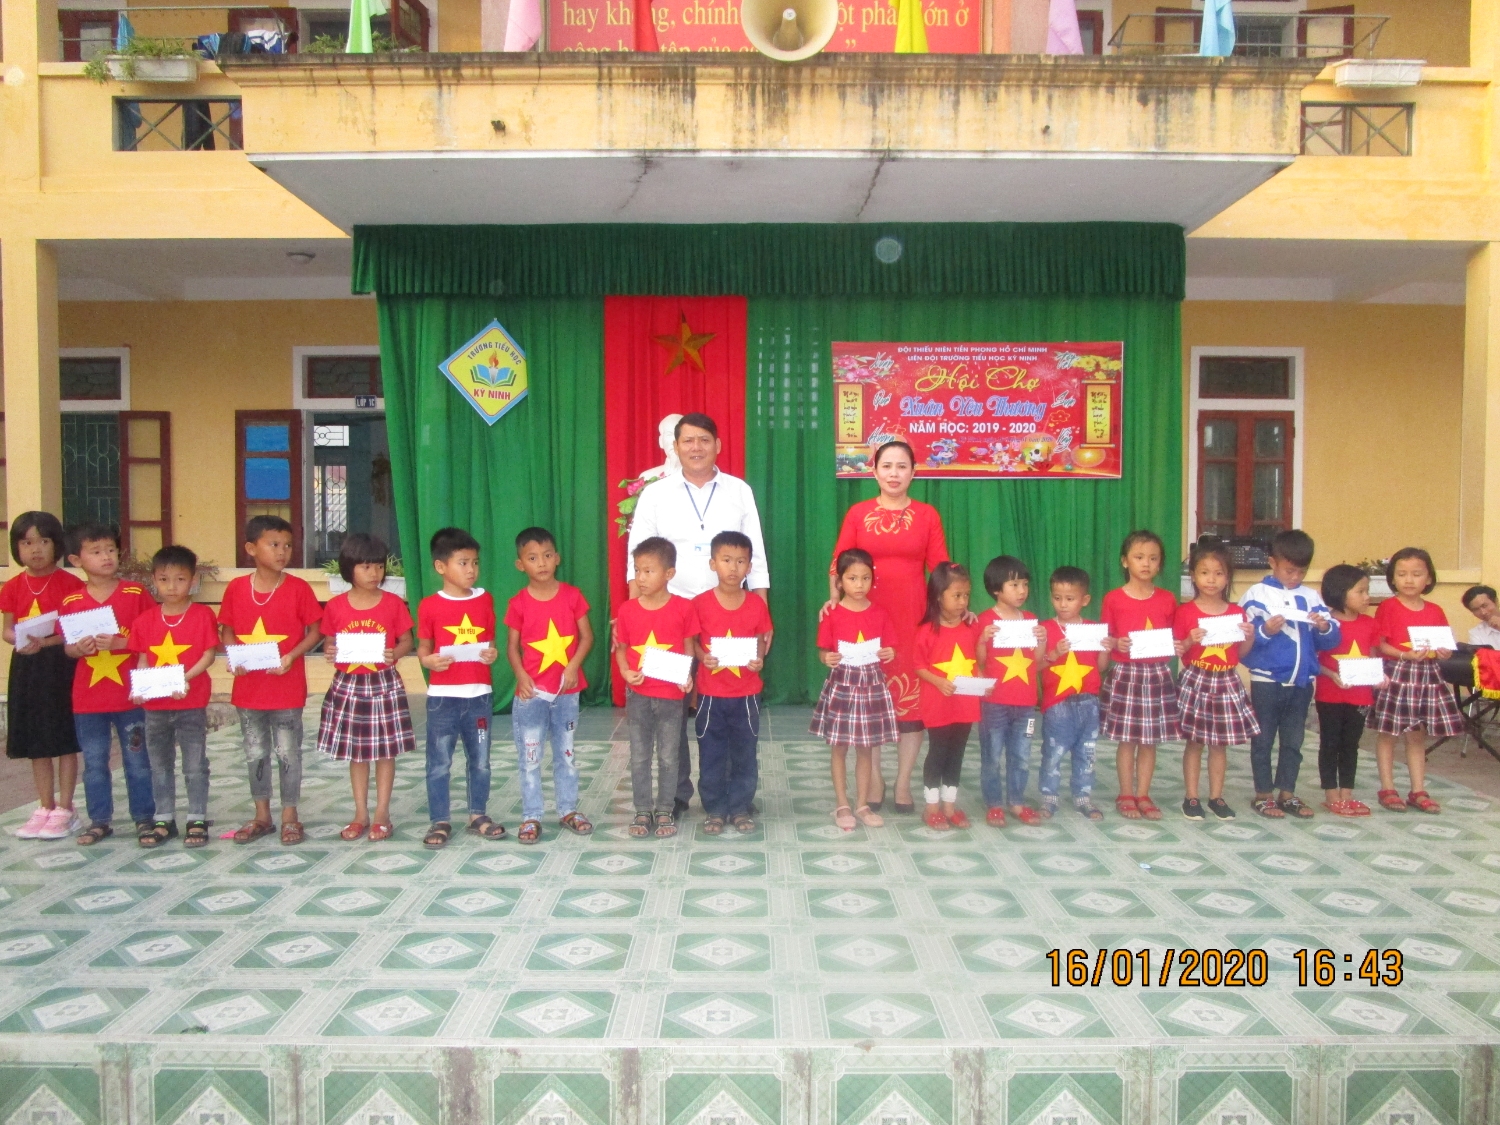 Trường tiểu học Kỳ Ninh tổ chức chương trình: "Xuân ấm yêu thương" cho các em học sinh có hoàn cảnh đặc biệt khó khăn.